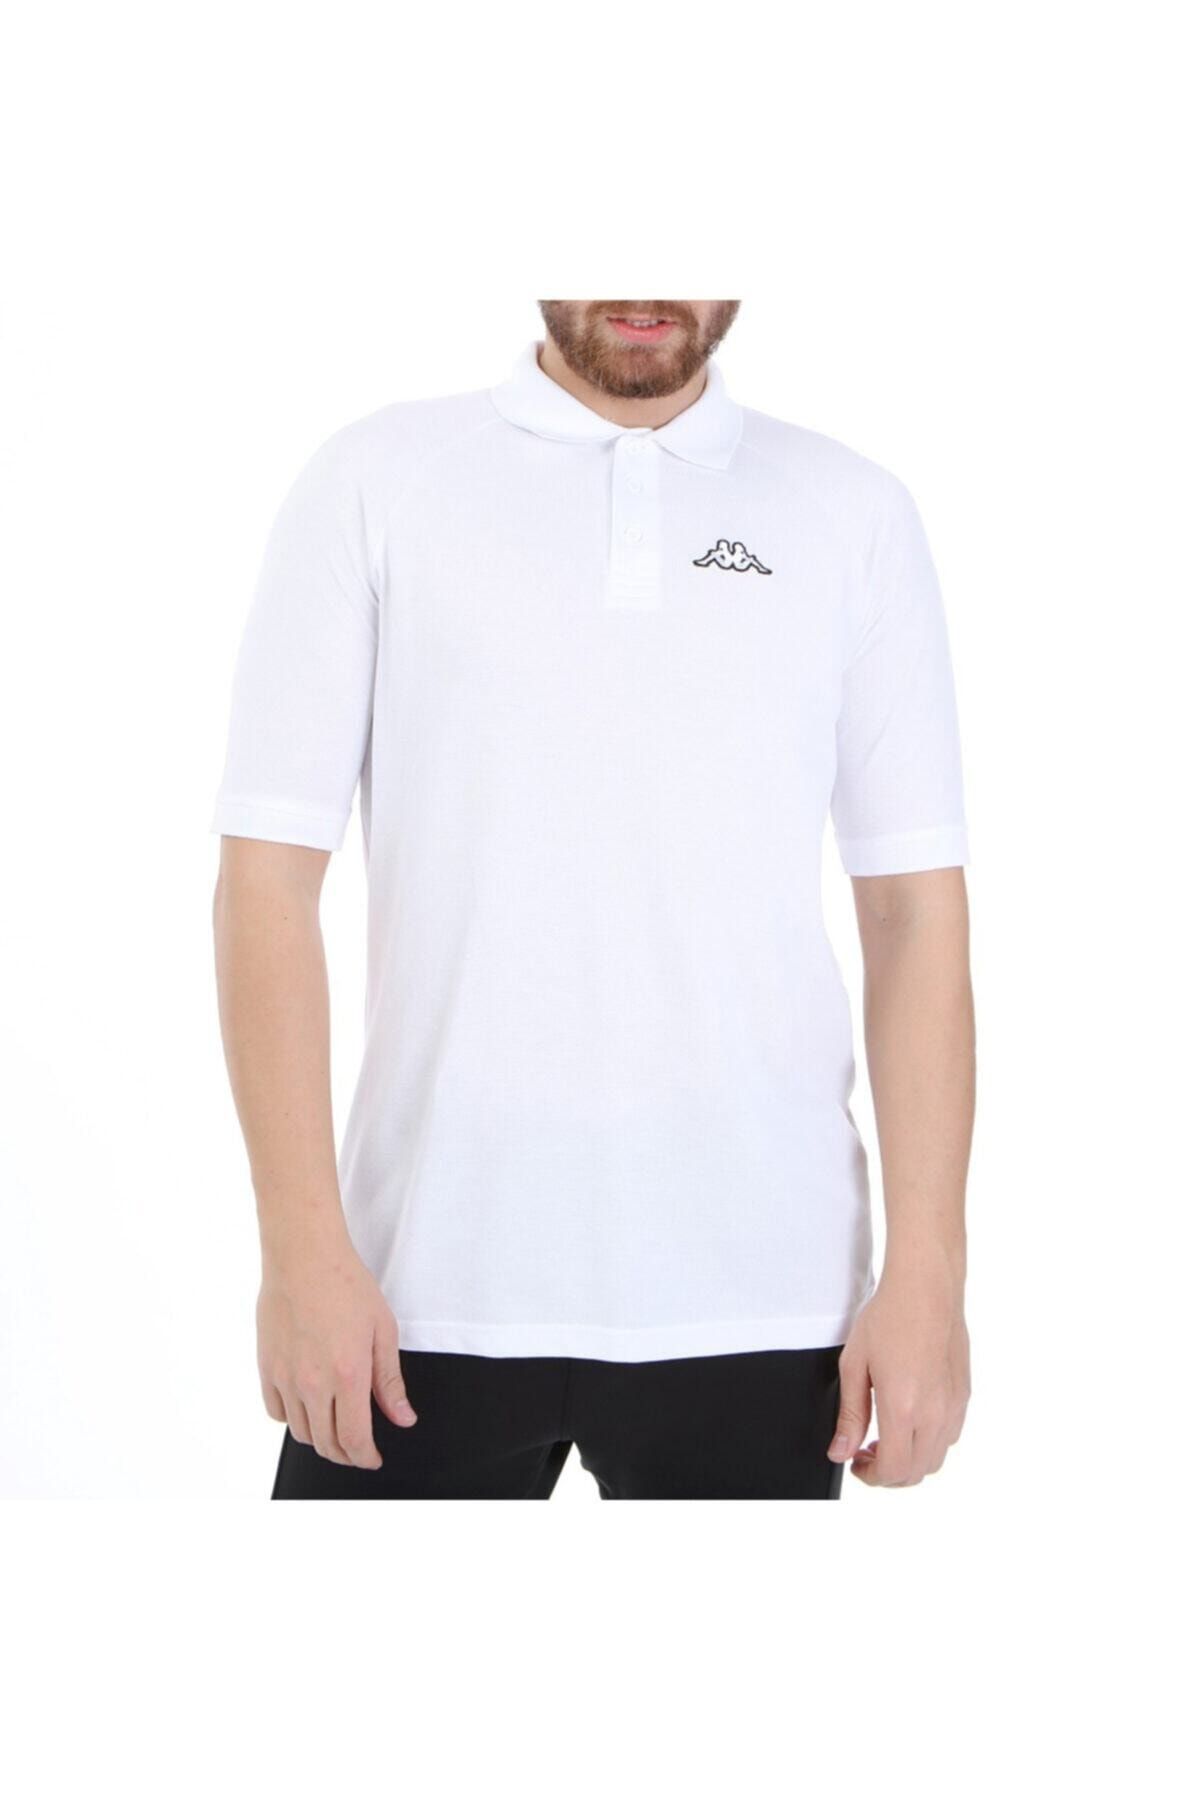 Kappa Erkek Polo T-shirt Calsı Beyaz